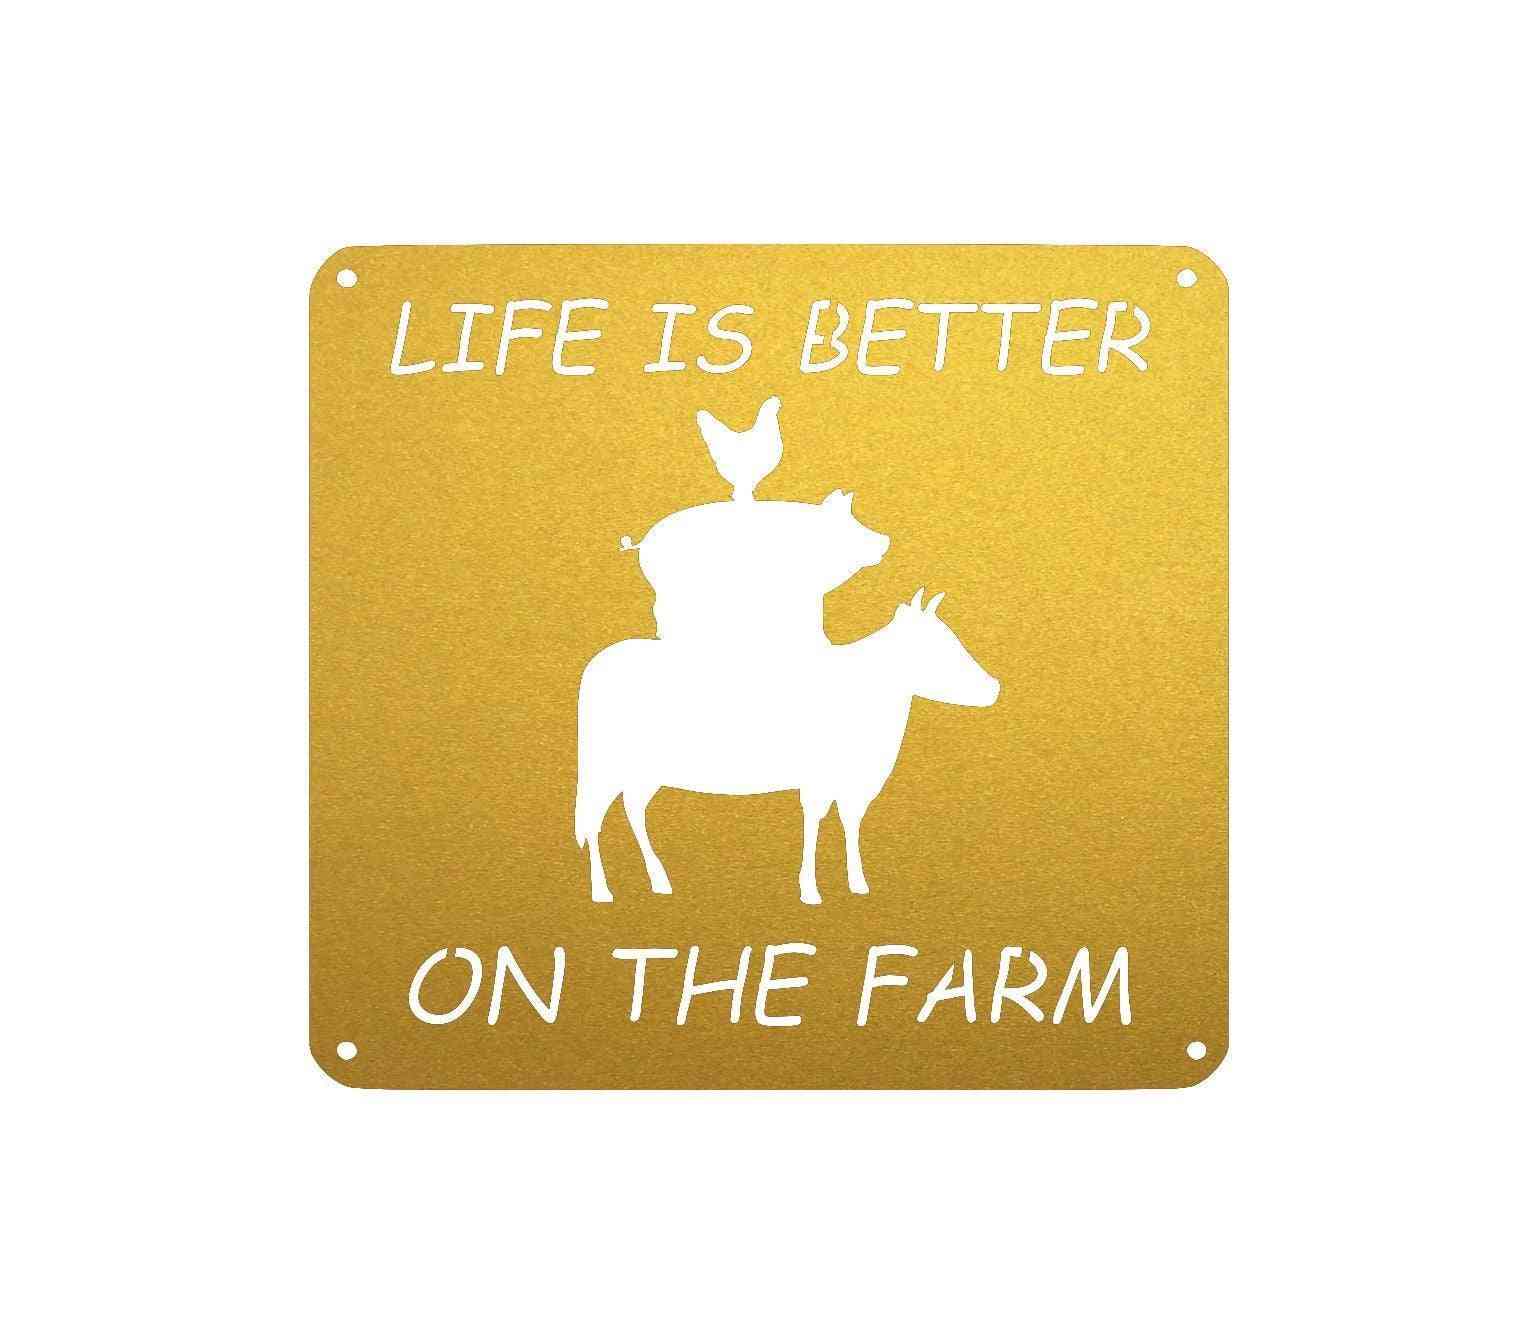 Het leven is beter op de muur van de boerderij